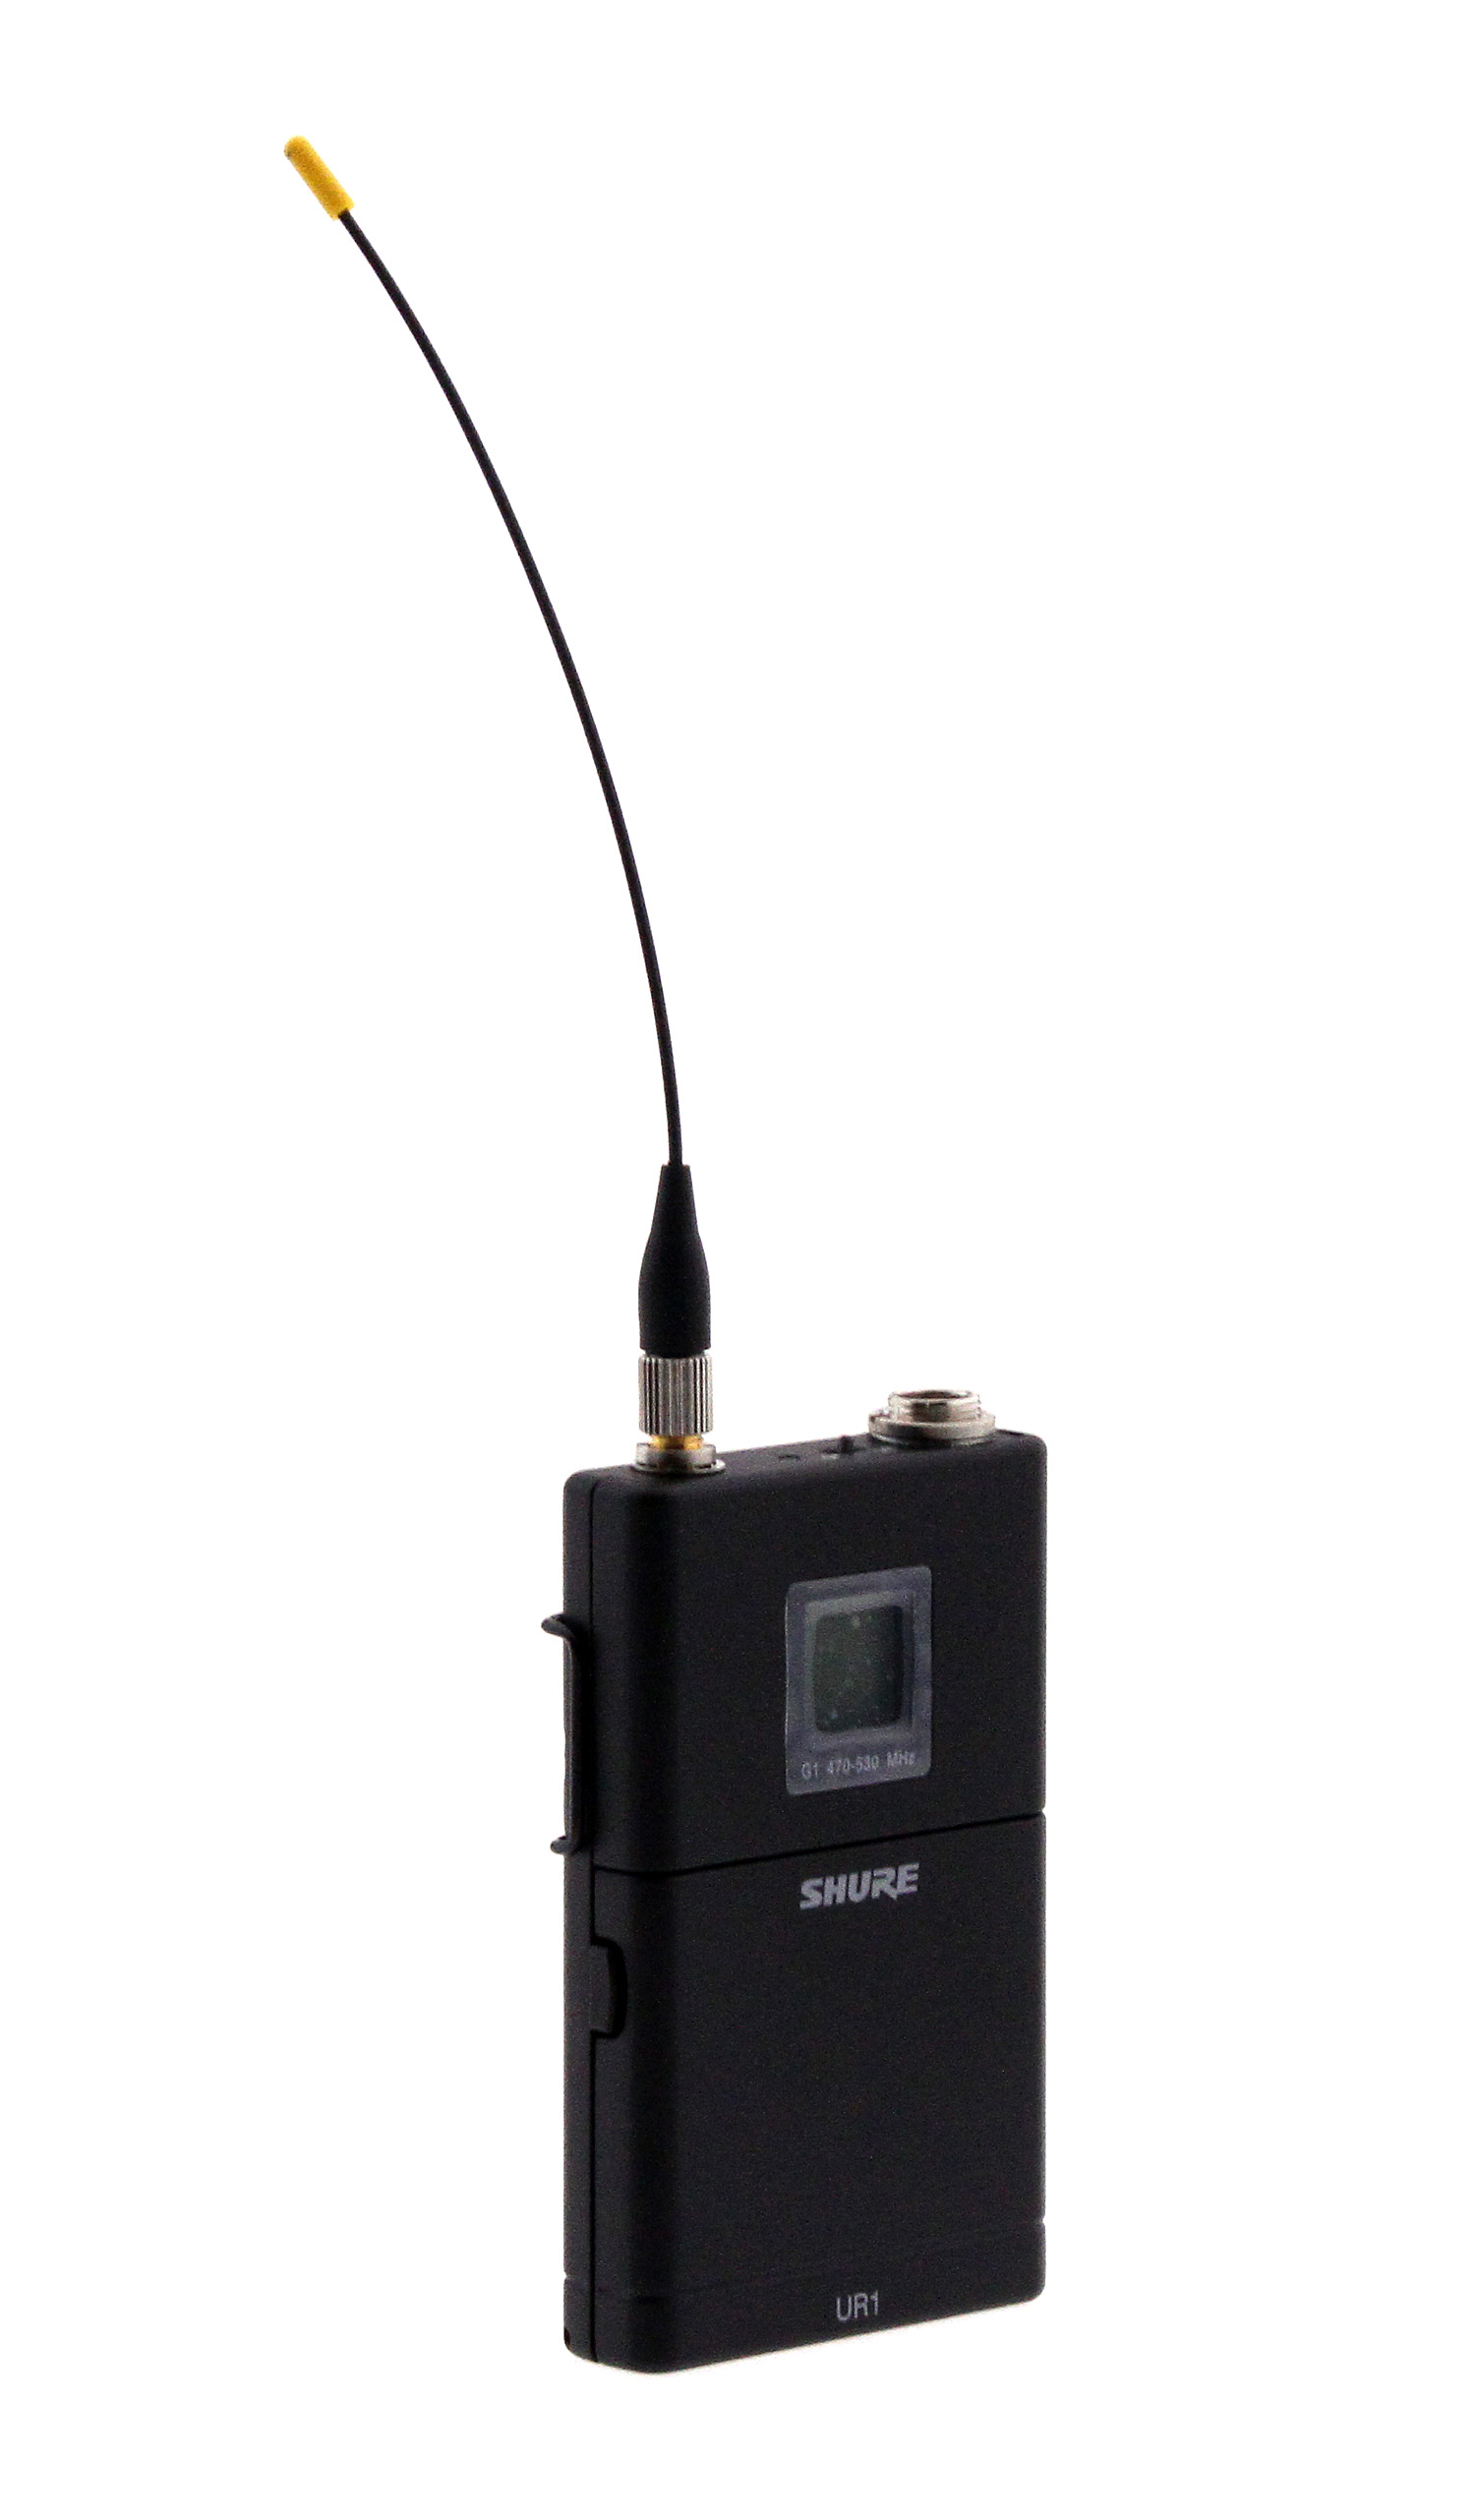 Shure UR1 Body-Pack Transmitter - G1 / 470-530MHz (Open Box)